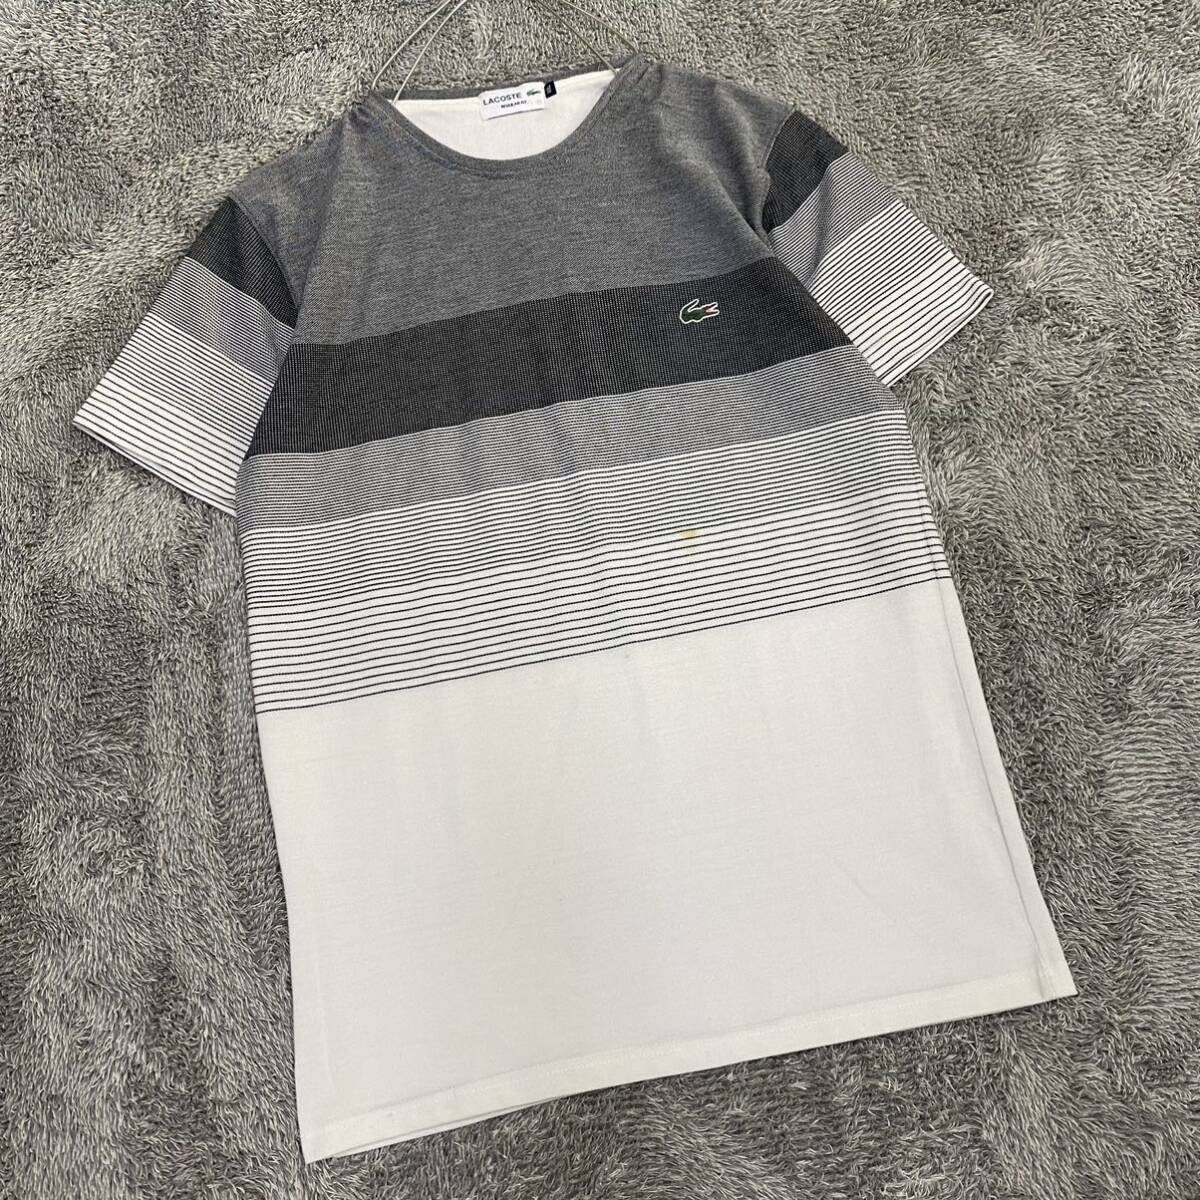 LACOSTE ラコステ Tシャツ 半袖カットソー サイズXXL グレー 灰色 メンズ トップス 最落なし （Z18）の画像1